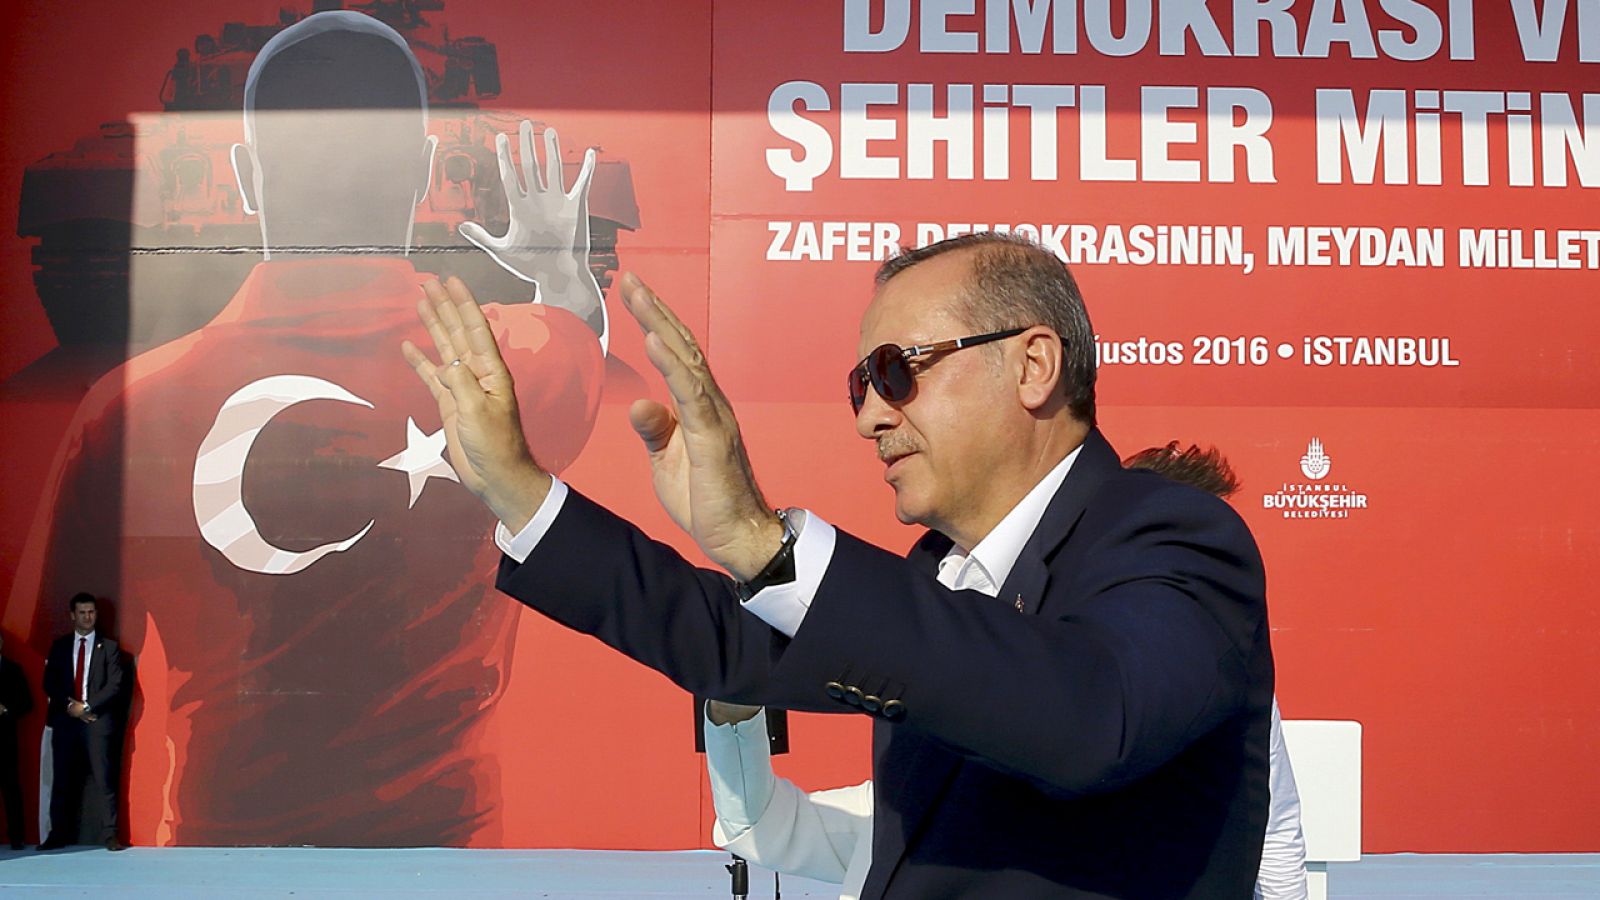 El presidente turco Erdogan durante la manifestación por la Democracia y los Mártires en Estambul